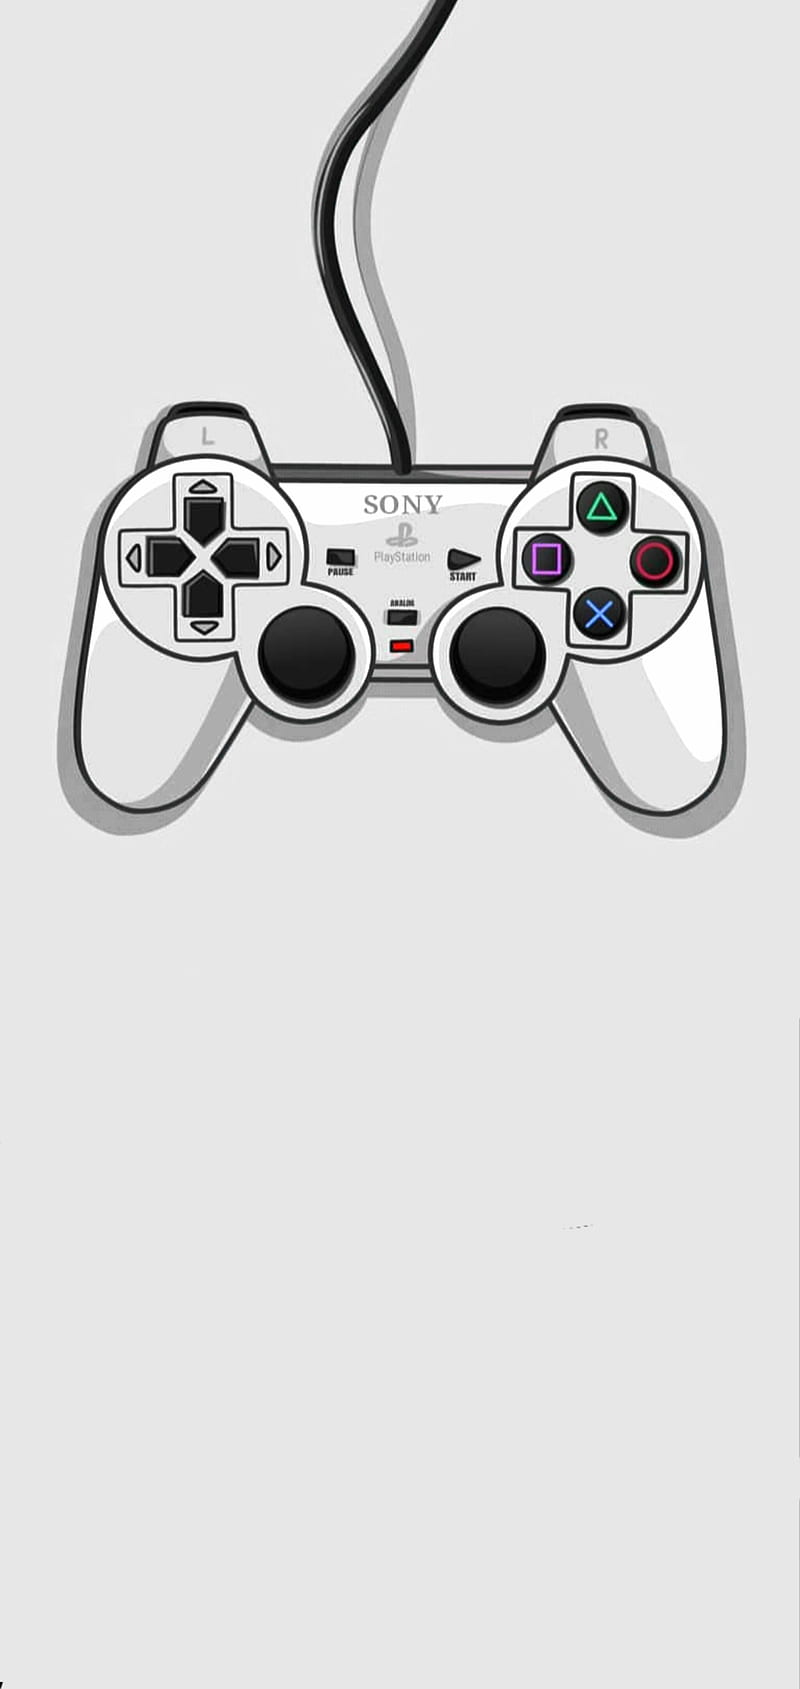 mando ps1 original gris con joystick playstatio - Buy Video games